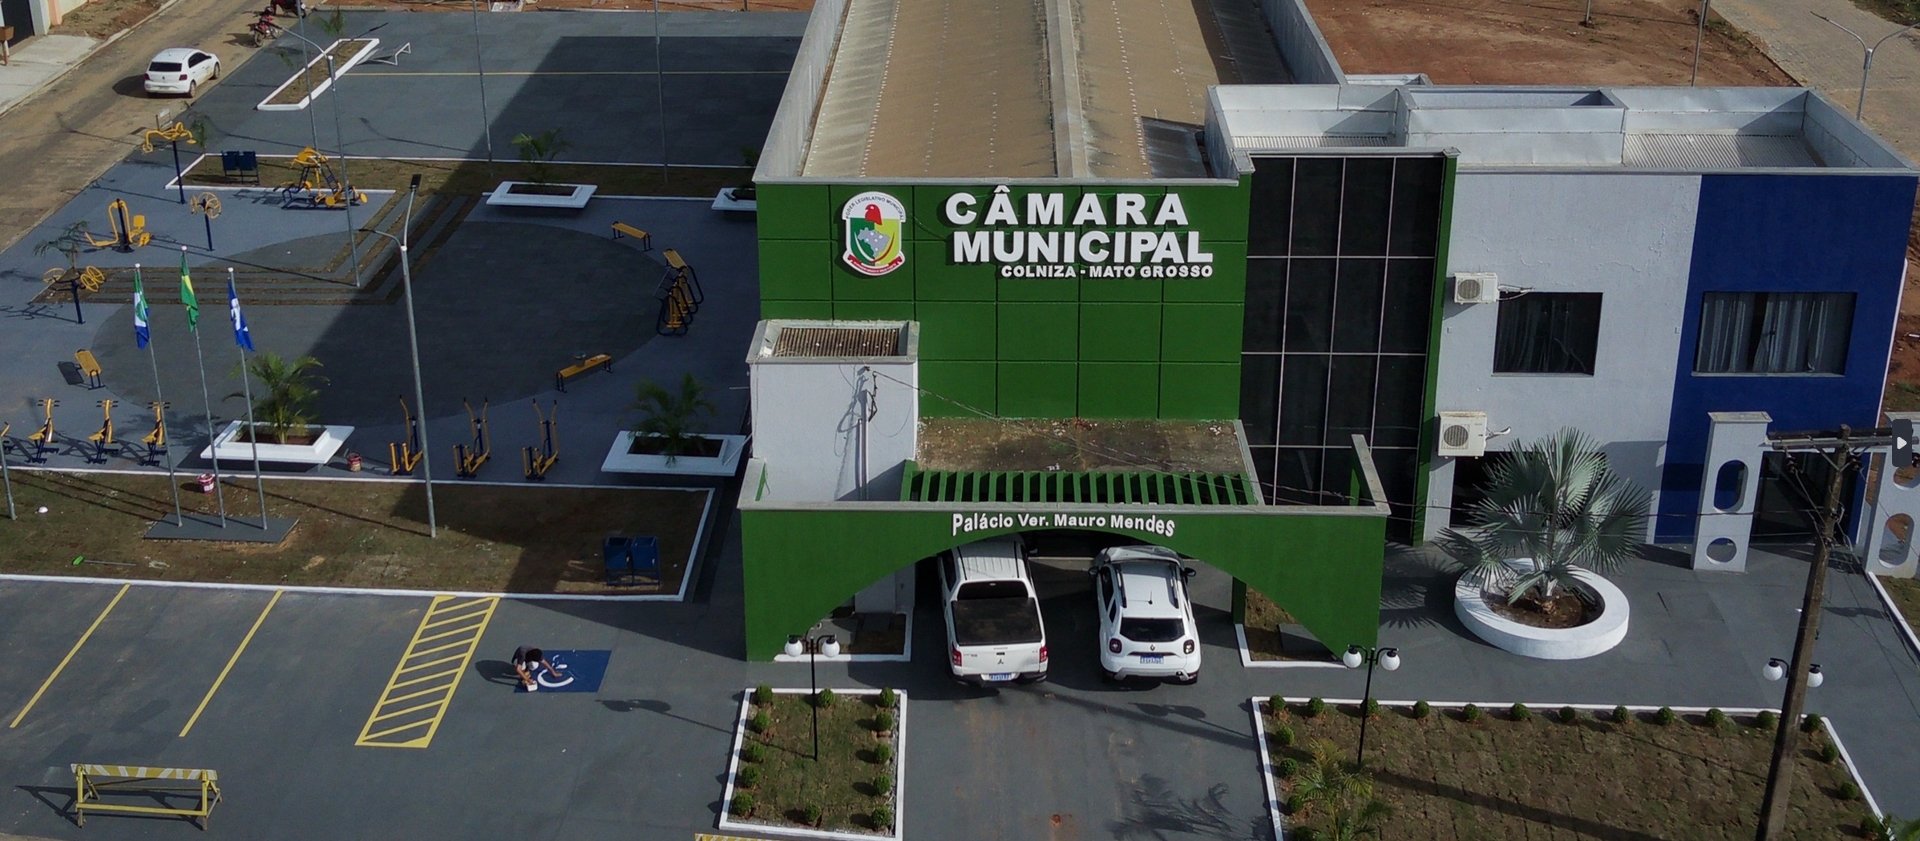 Câmara municipal de Colniza realizará licitação para reforma e ampliação das dependências do poder legislativo.